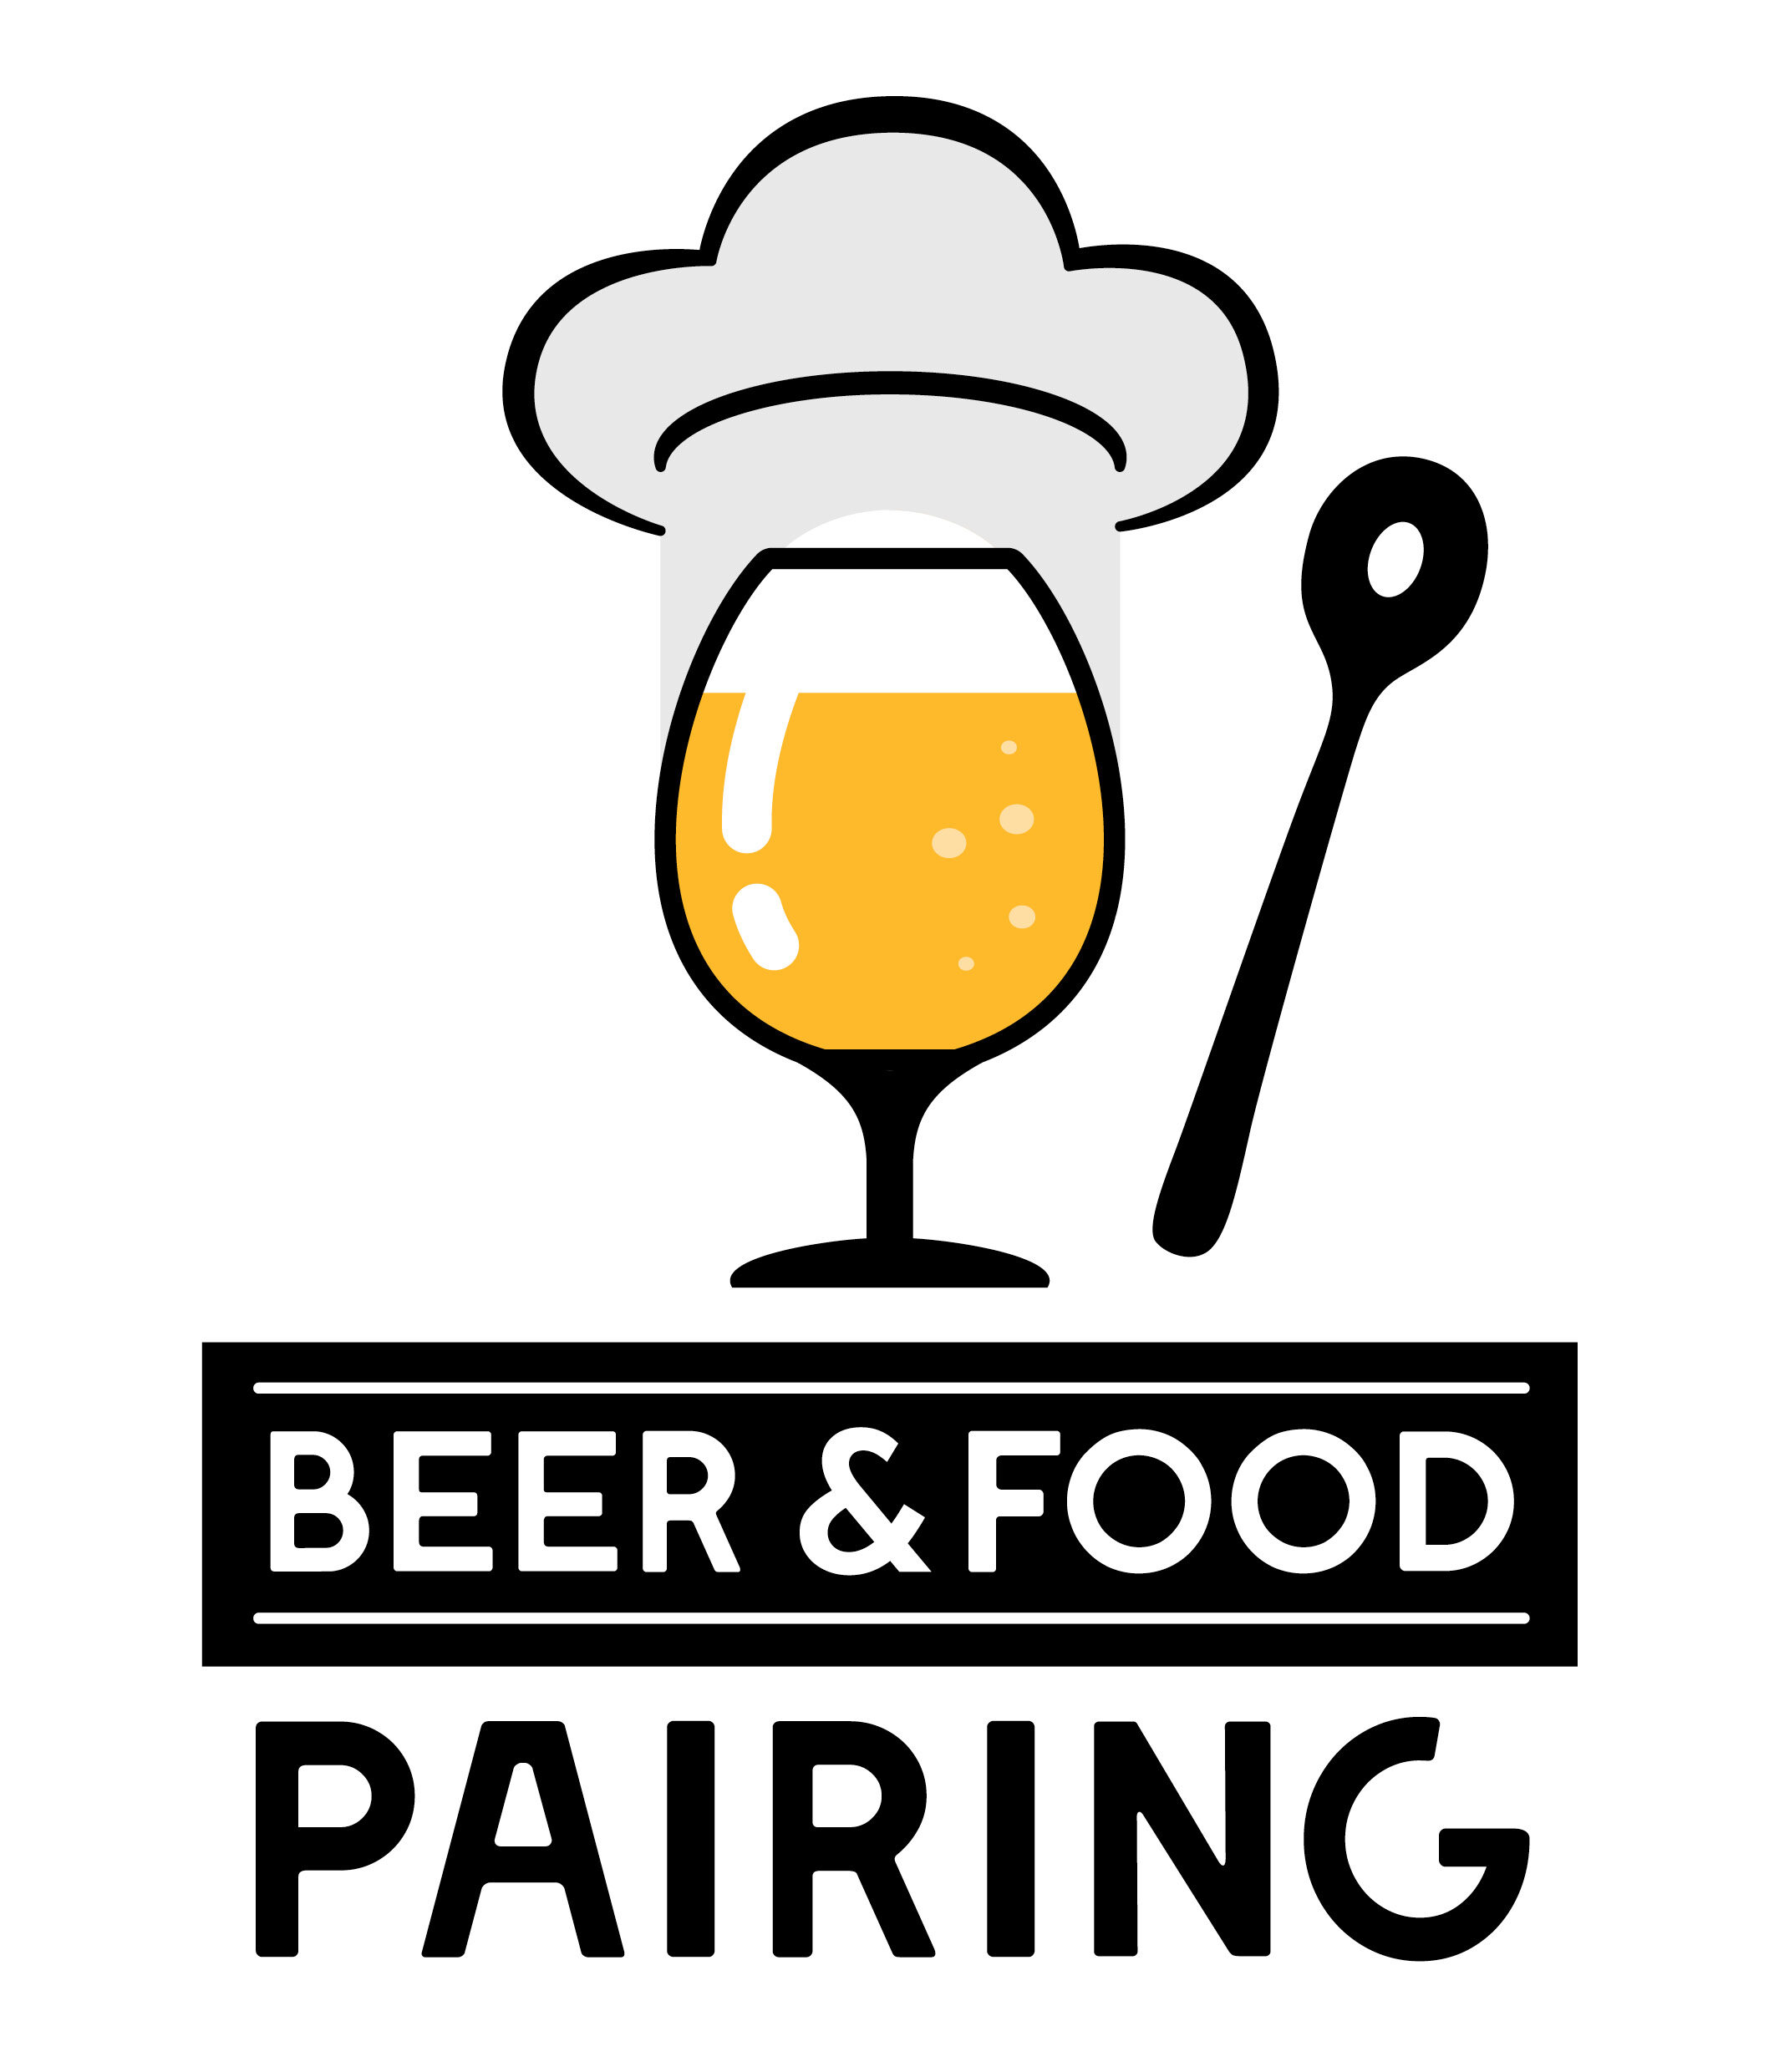 Beer & Food Pairing